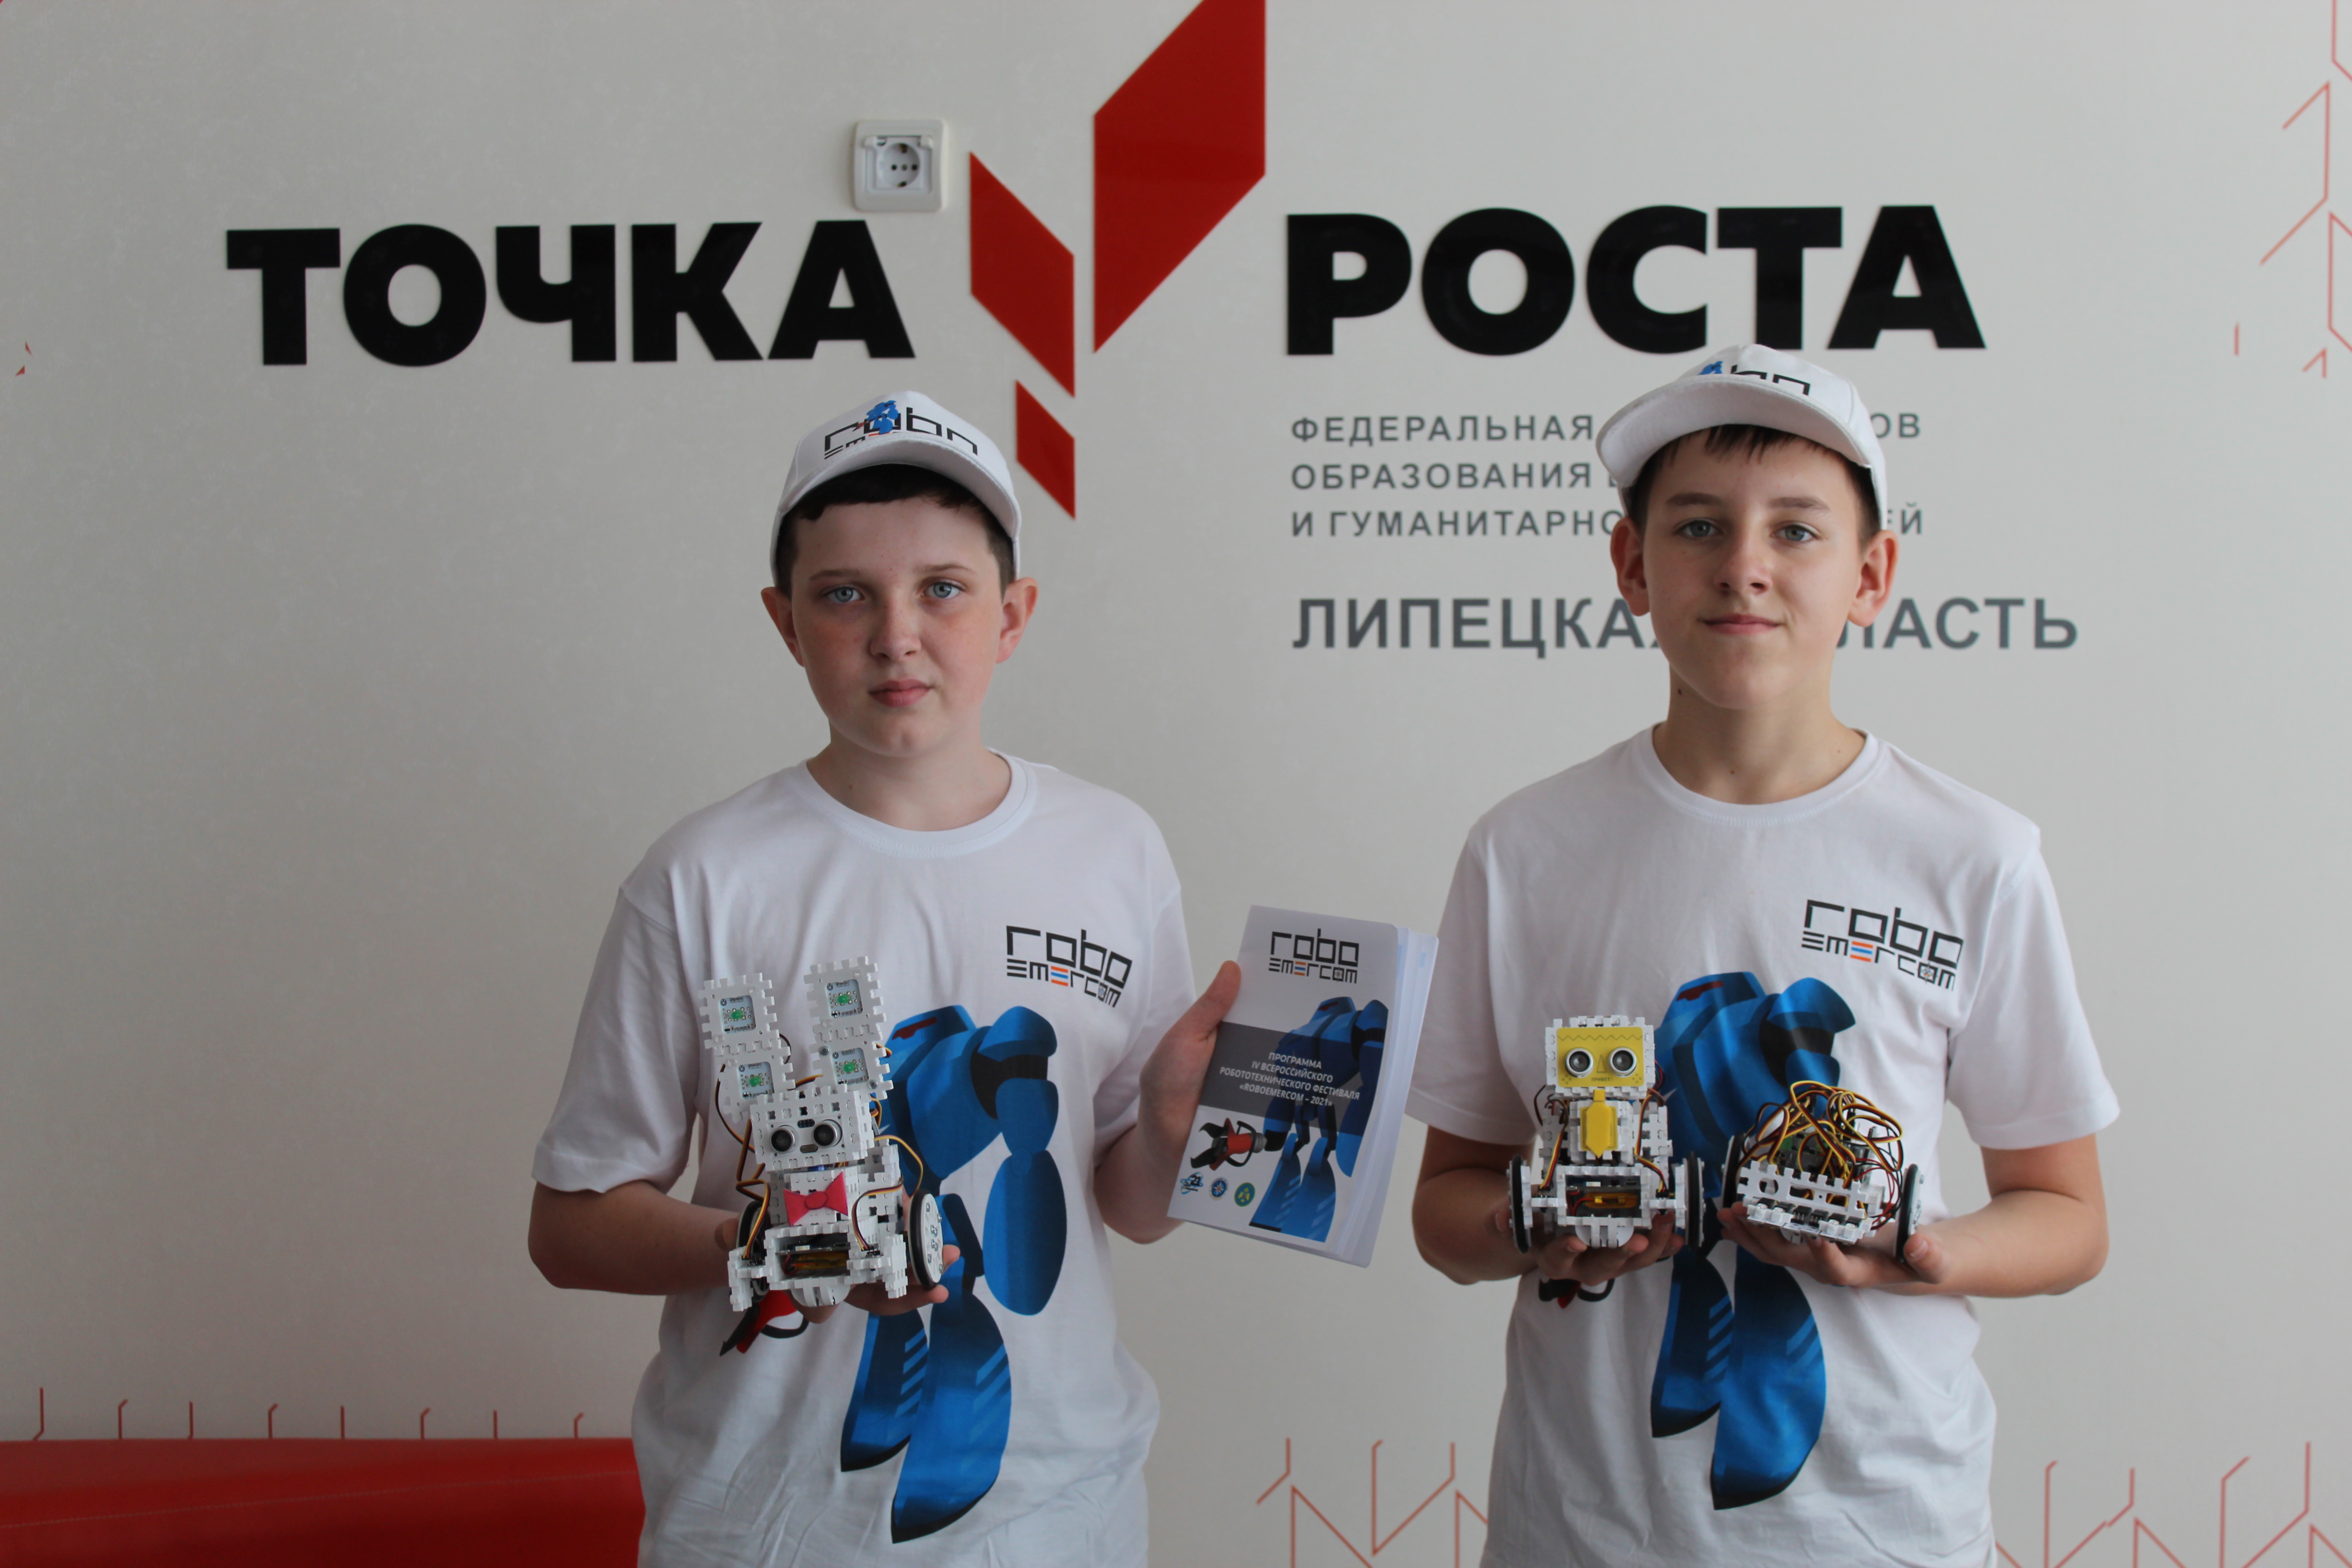 Участники всероссийского конкурса робоэмеркон.